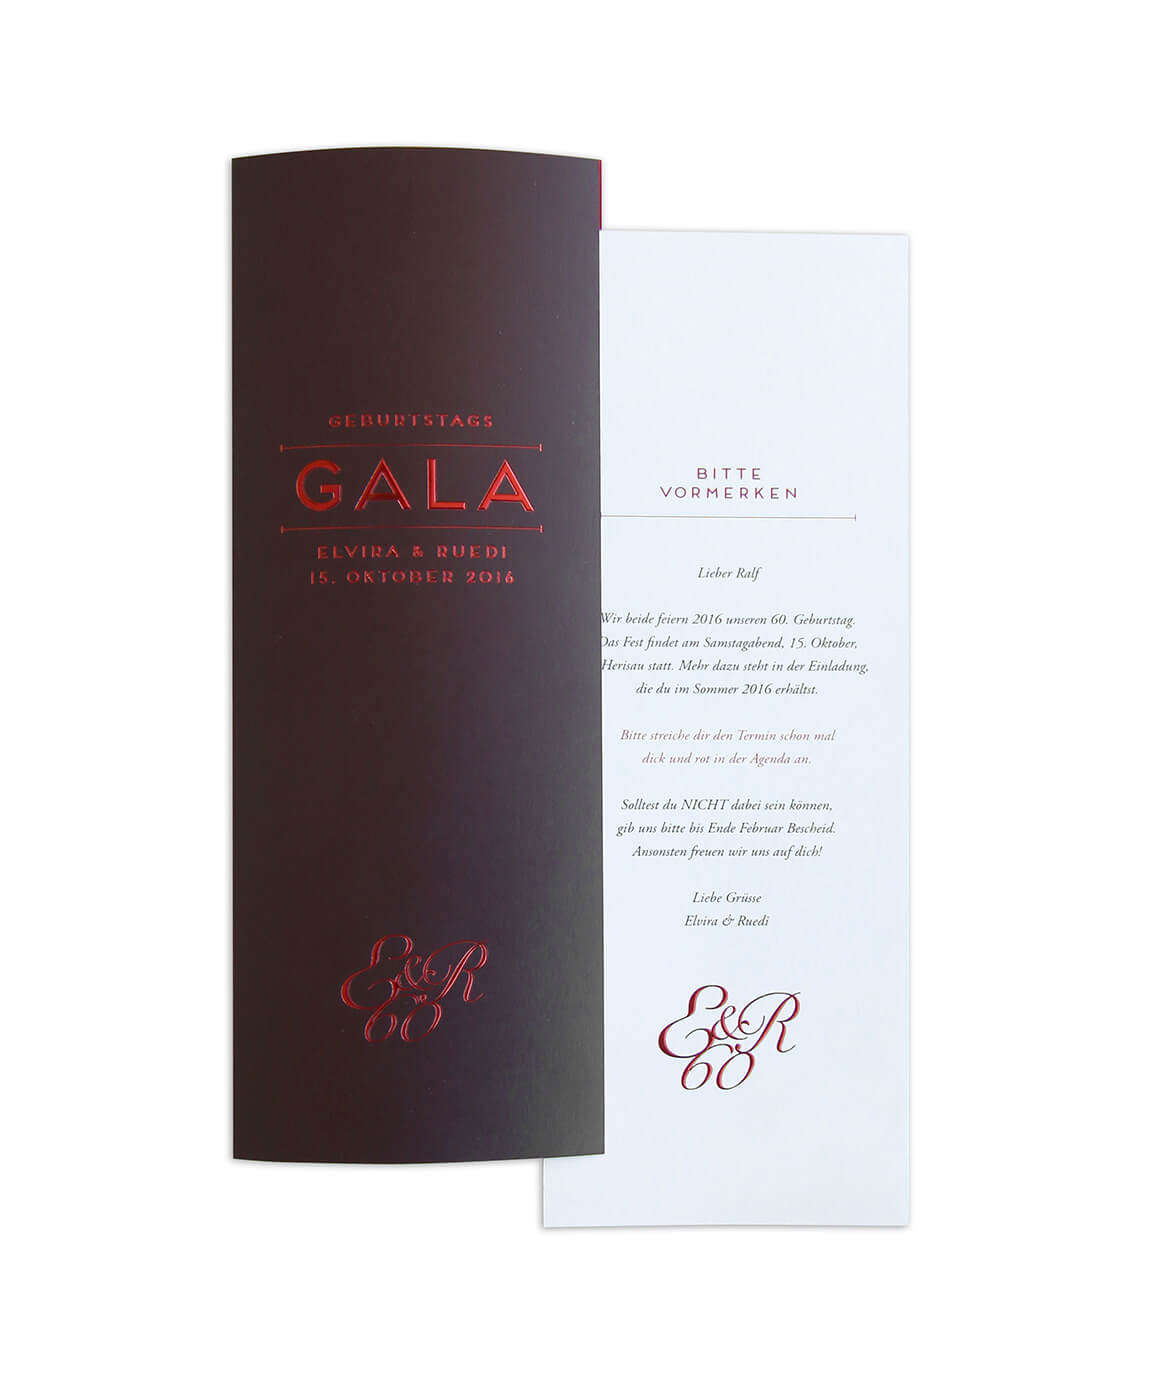 Geburtstags Gala Einladung, Veredelung durch Heissfolie Prägung, EightyNine, Agentur für Corporate Design und Grafik in St. Gallen, Schweiz